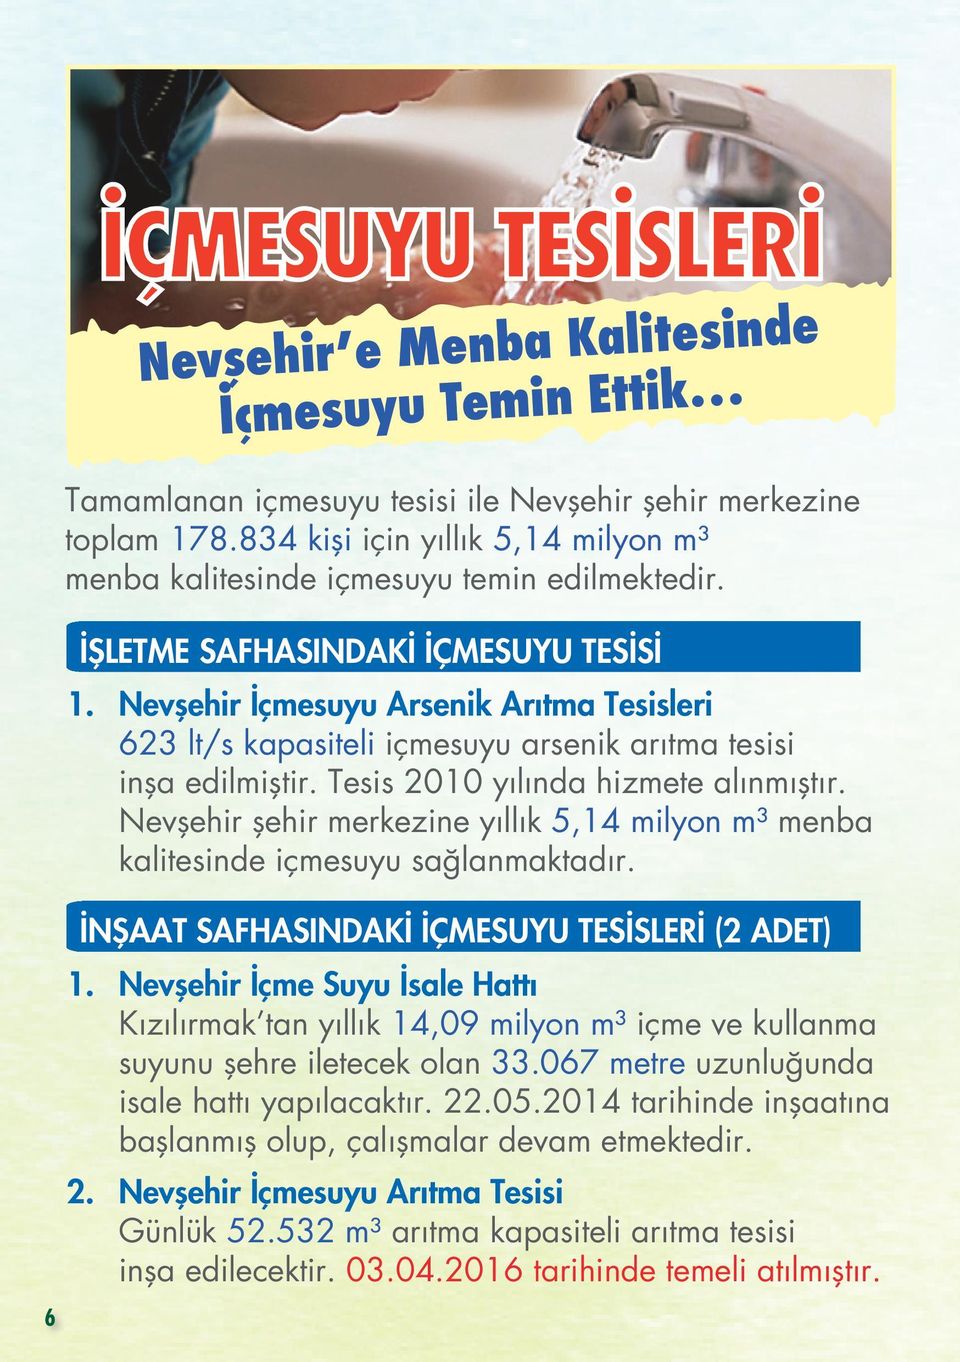 Nevşehir İçmesuyu Arsenik Arıtma Tesisleri 623 lt/s kapasiteli içmesuyu arsenik arıtma tesisi inşa edilmiştir. Tesis 2010 yılında hizmete alınmıştır.